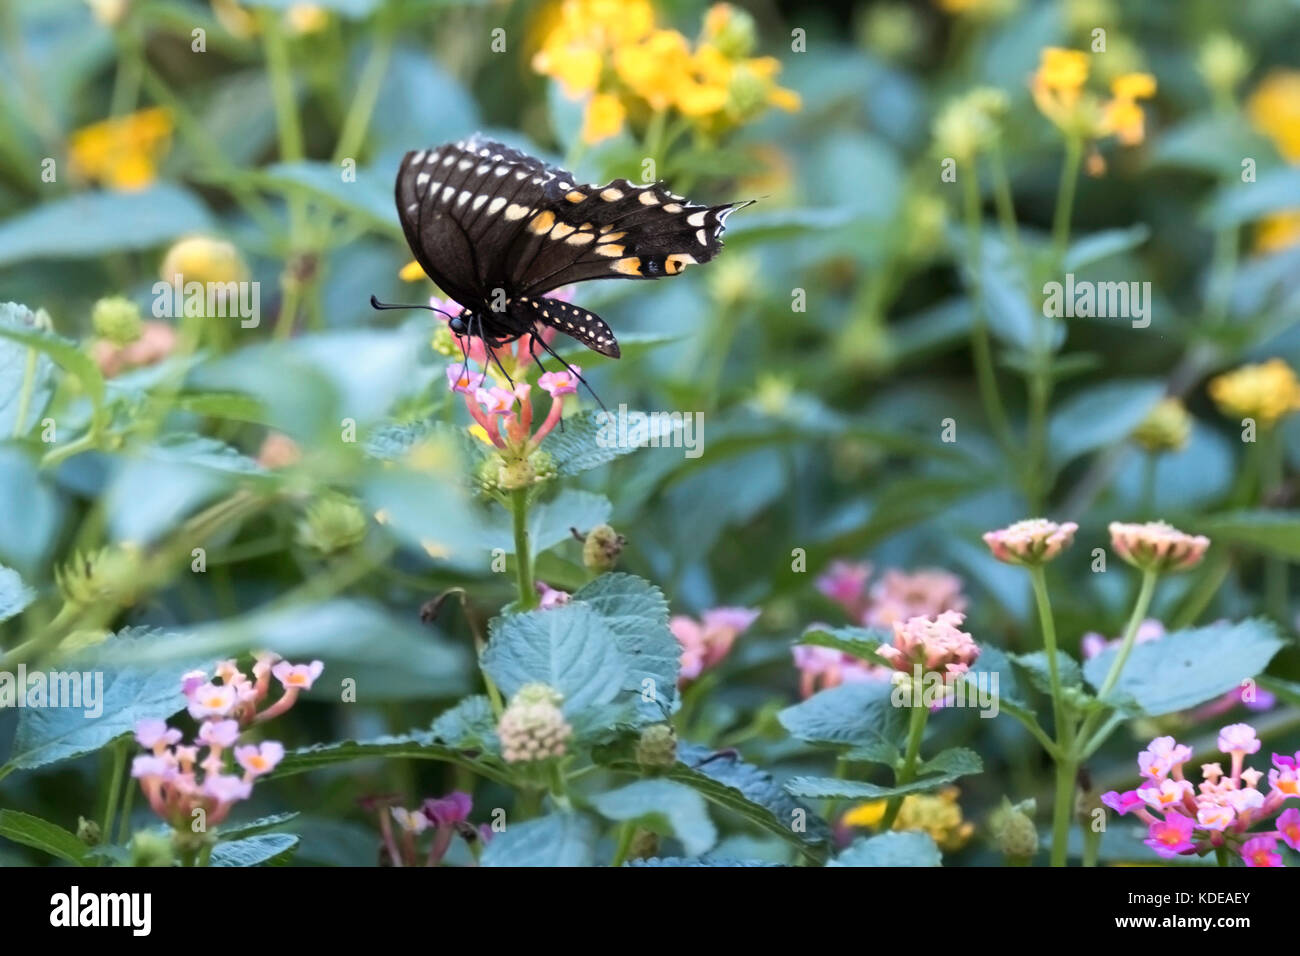 Schwalbenschwanz Schmetterling, Papilio polyxenes, Schmetterling von Oklahoma und New Jersey, Fütterung auf Rosa und Gelb Lantana camara. Oklahoma, USA. Stockfoto